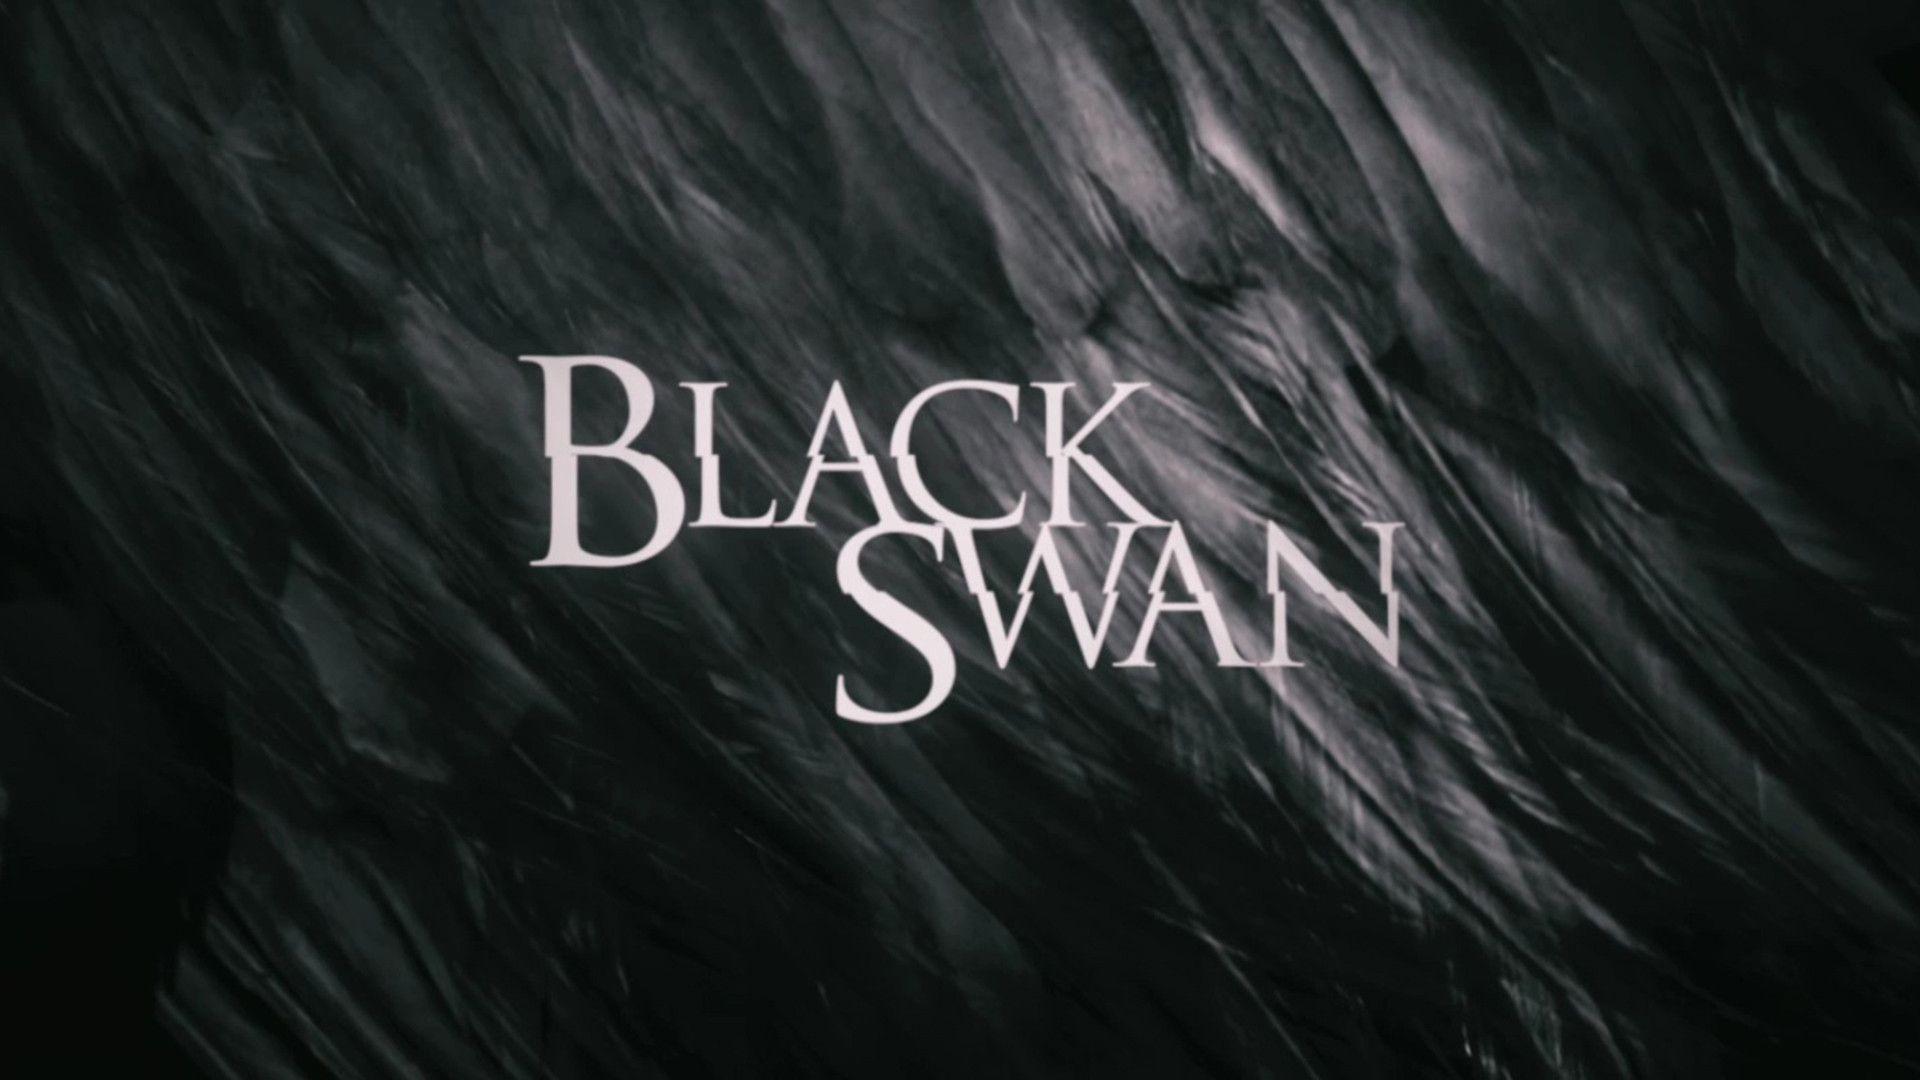 Black swan wallpapers hd